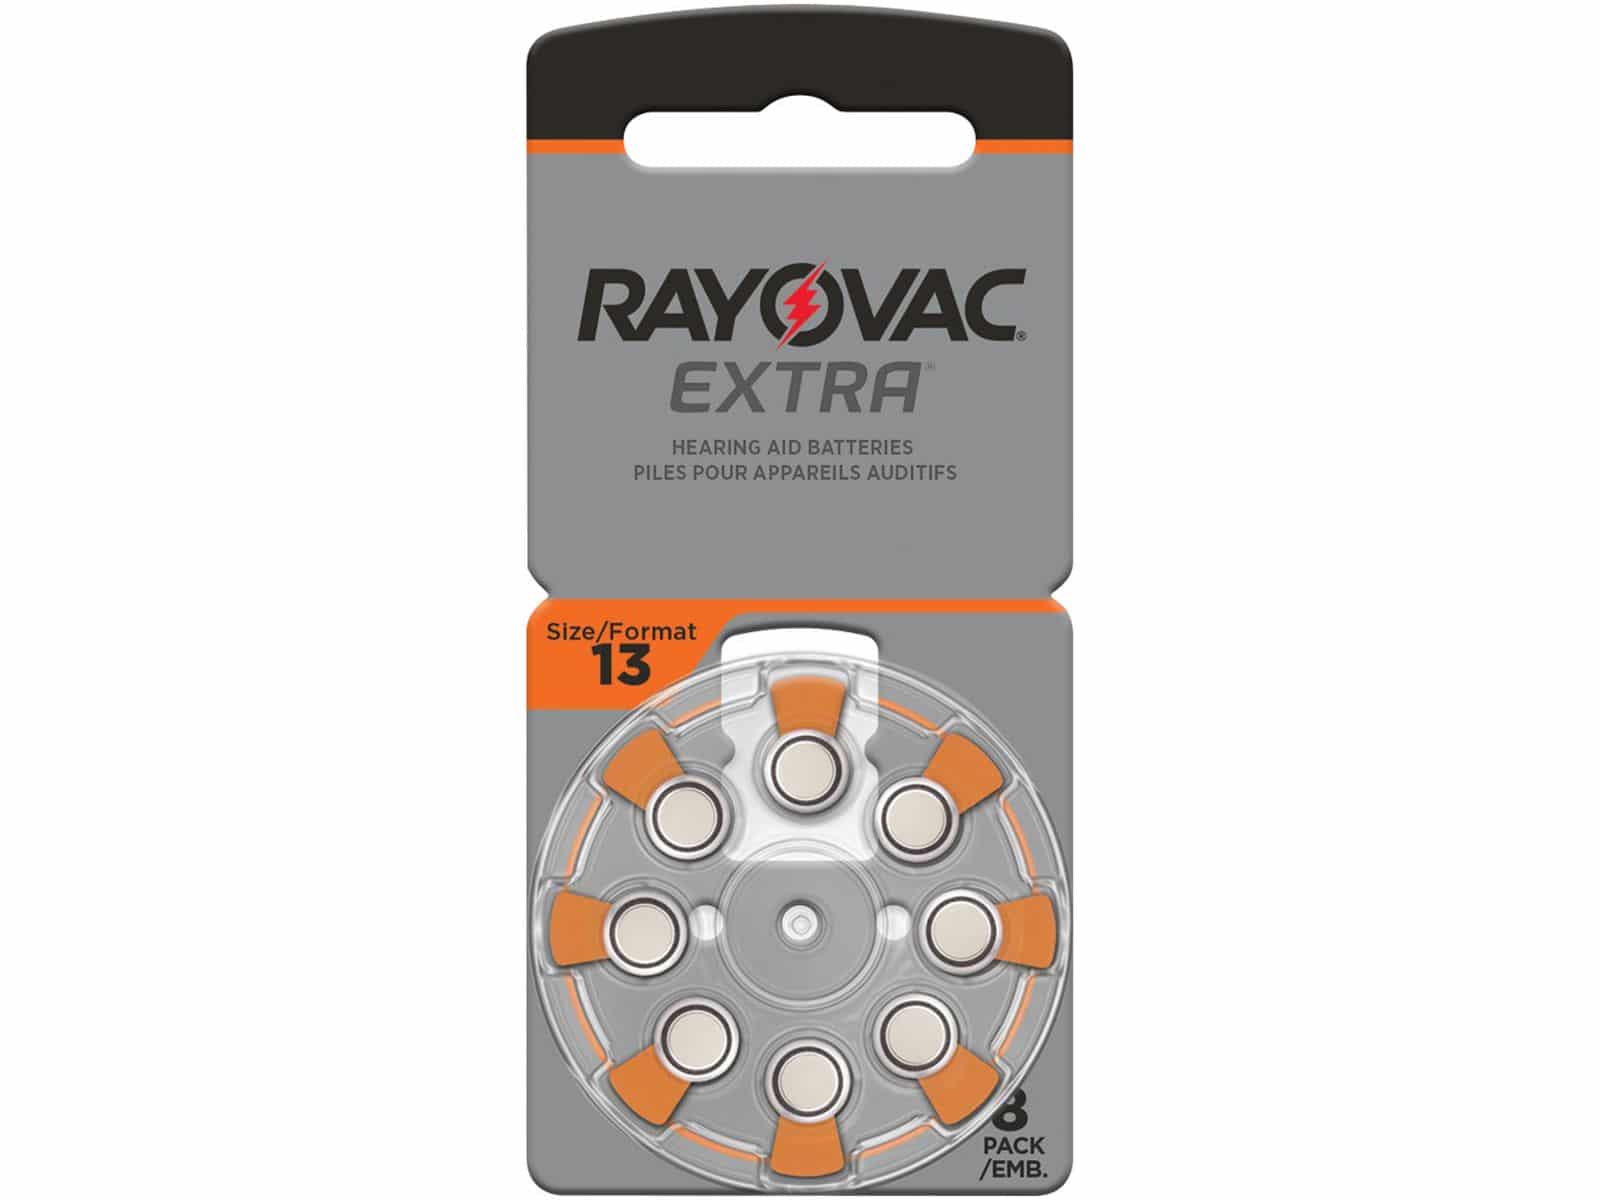 RAYOVAC Hörgeräte-Batterie, Größe 13, 8 Stück von Rayovac